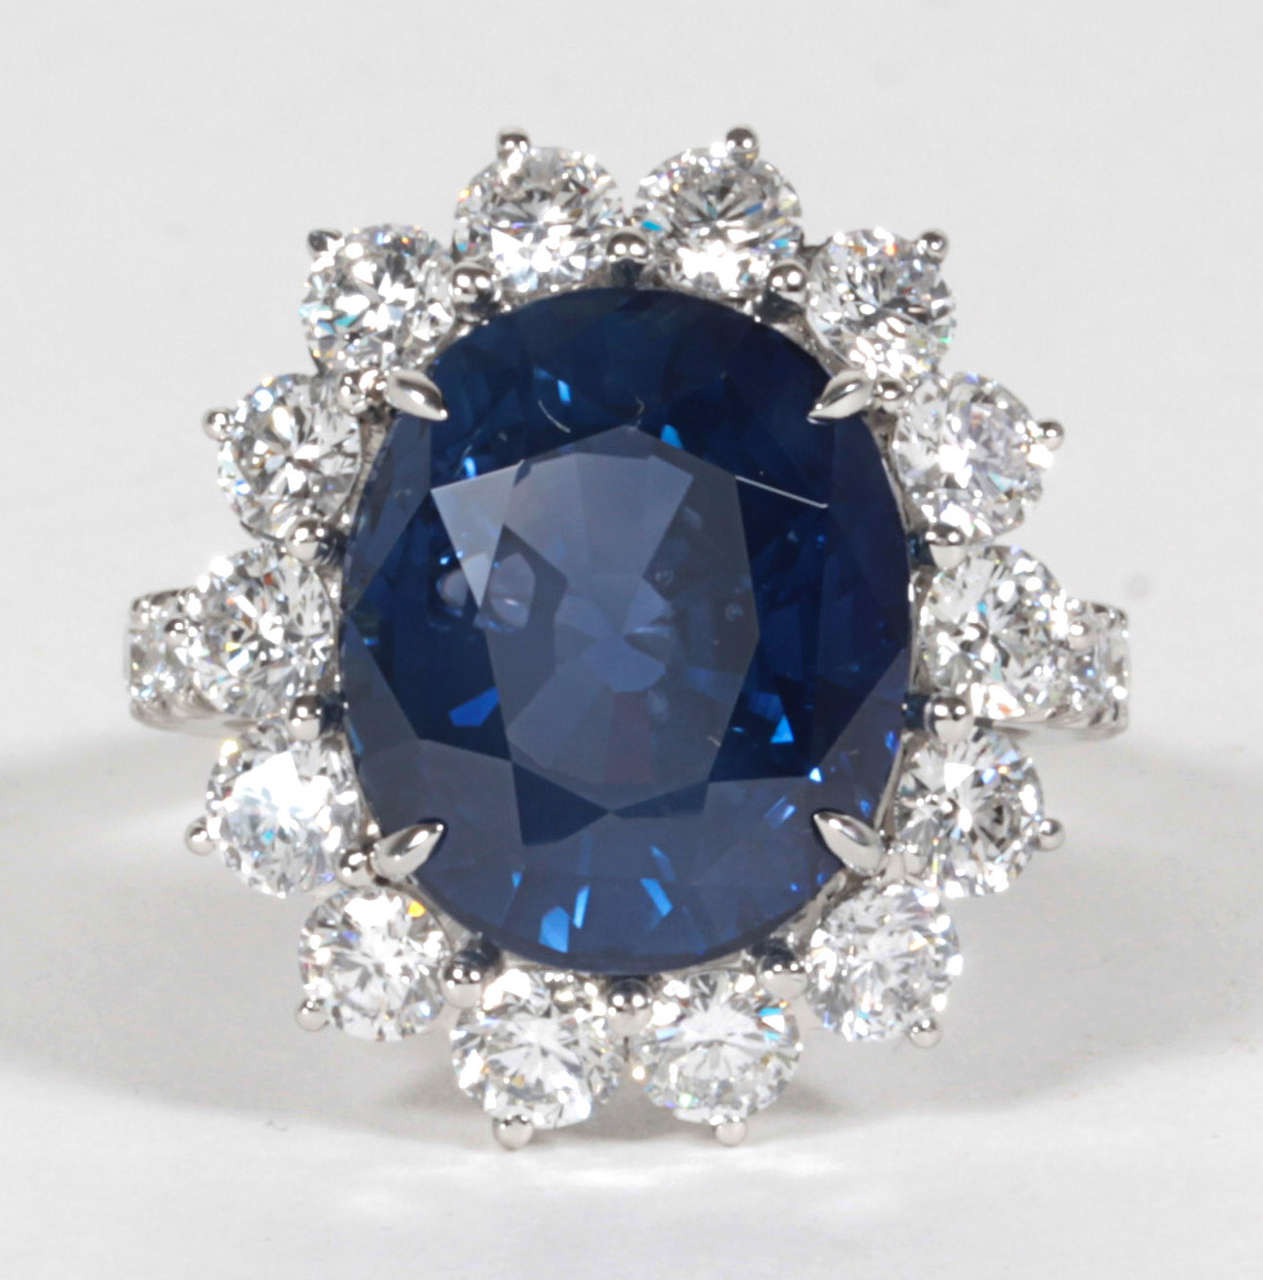 Une belle bague à ajouter à toute collection.

11,73 saphir bleu vif ovale certifié par le GIA.

2,85 carats de diamants de couleur F-G et de pureté VS sertis dans une monture en platine faite à la main.